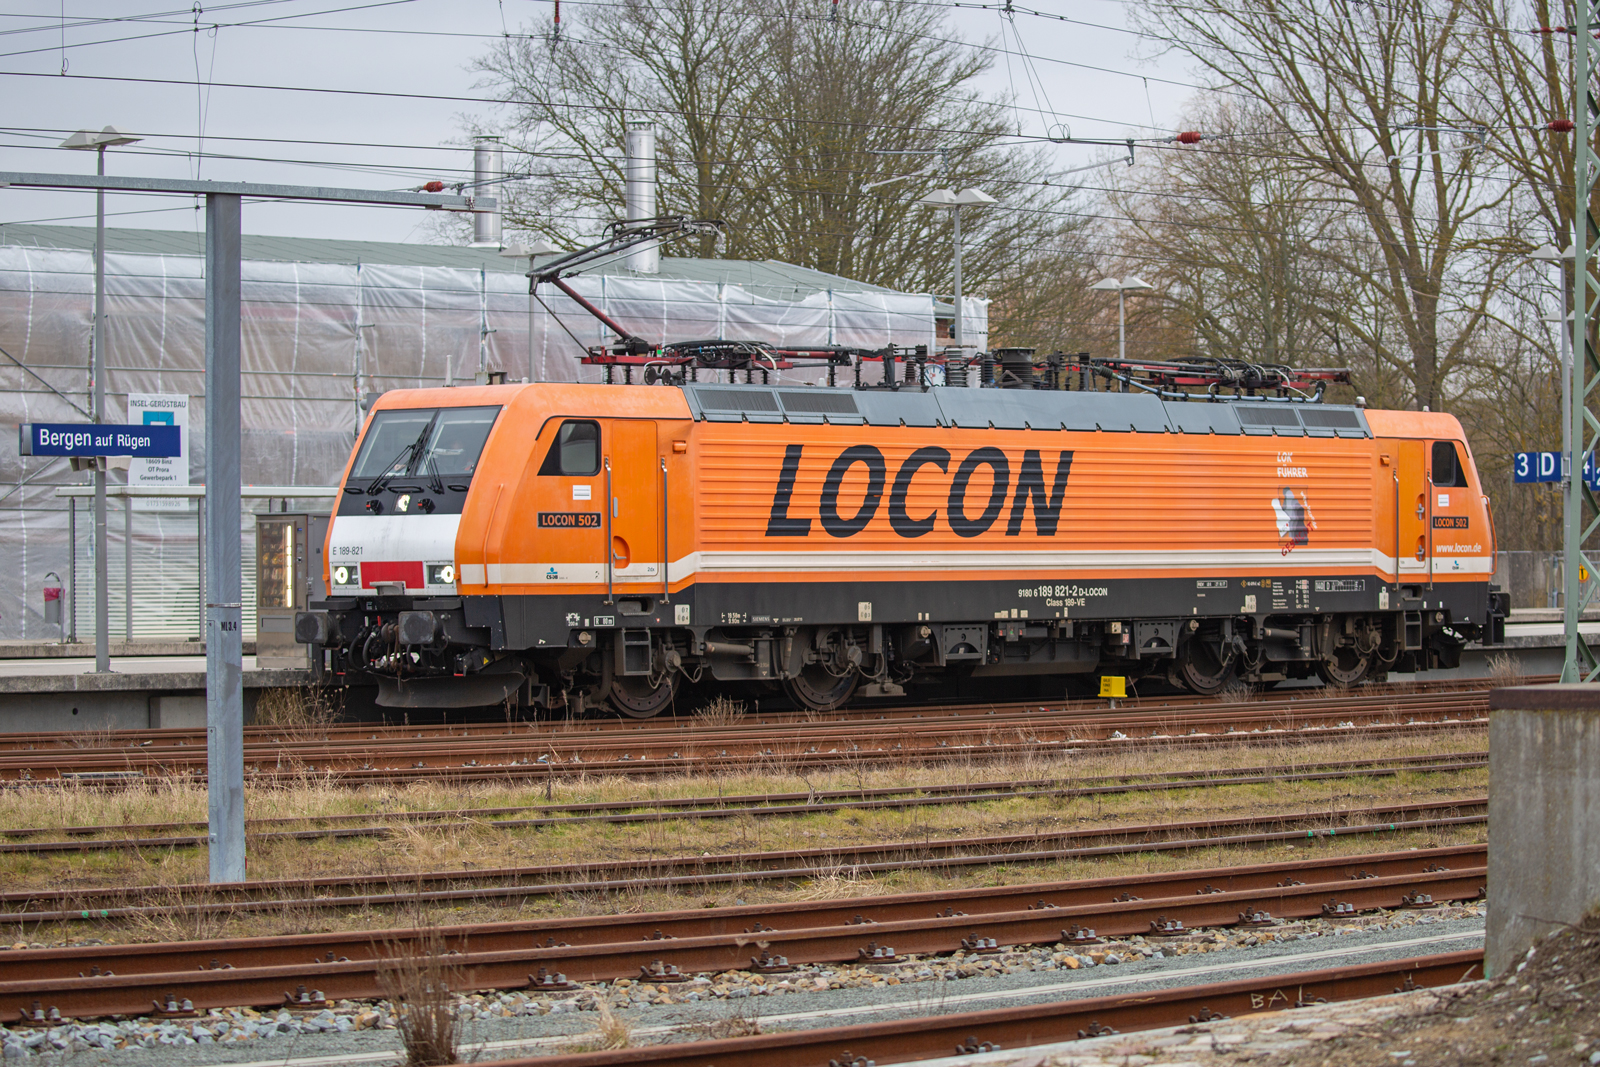 LOCON 502 Lok 189 821 in Bergen auf Rügen auf Ausfahrt wartend um den zweiten Teil der Kreidewagen von Lancken zu holen. - 10.03.2023